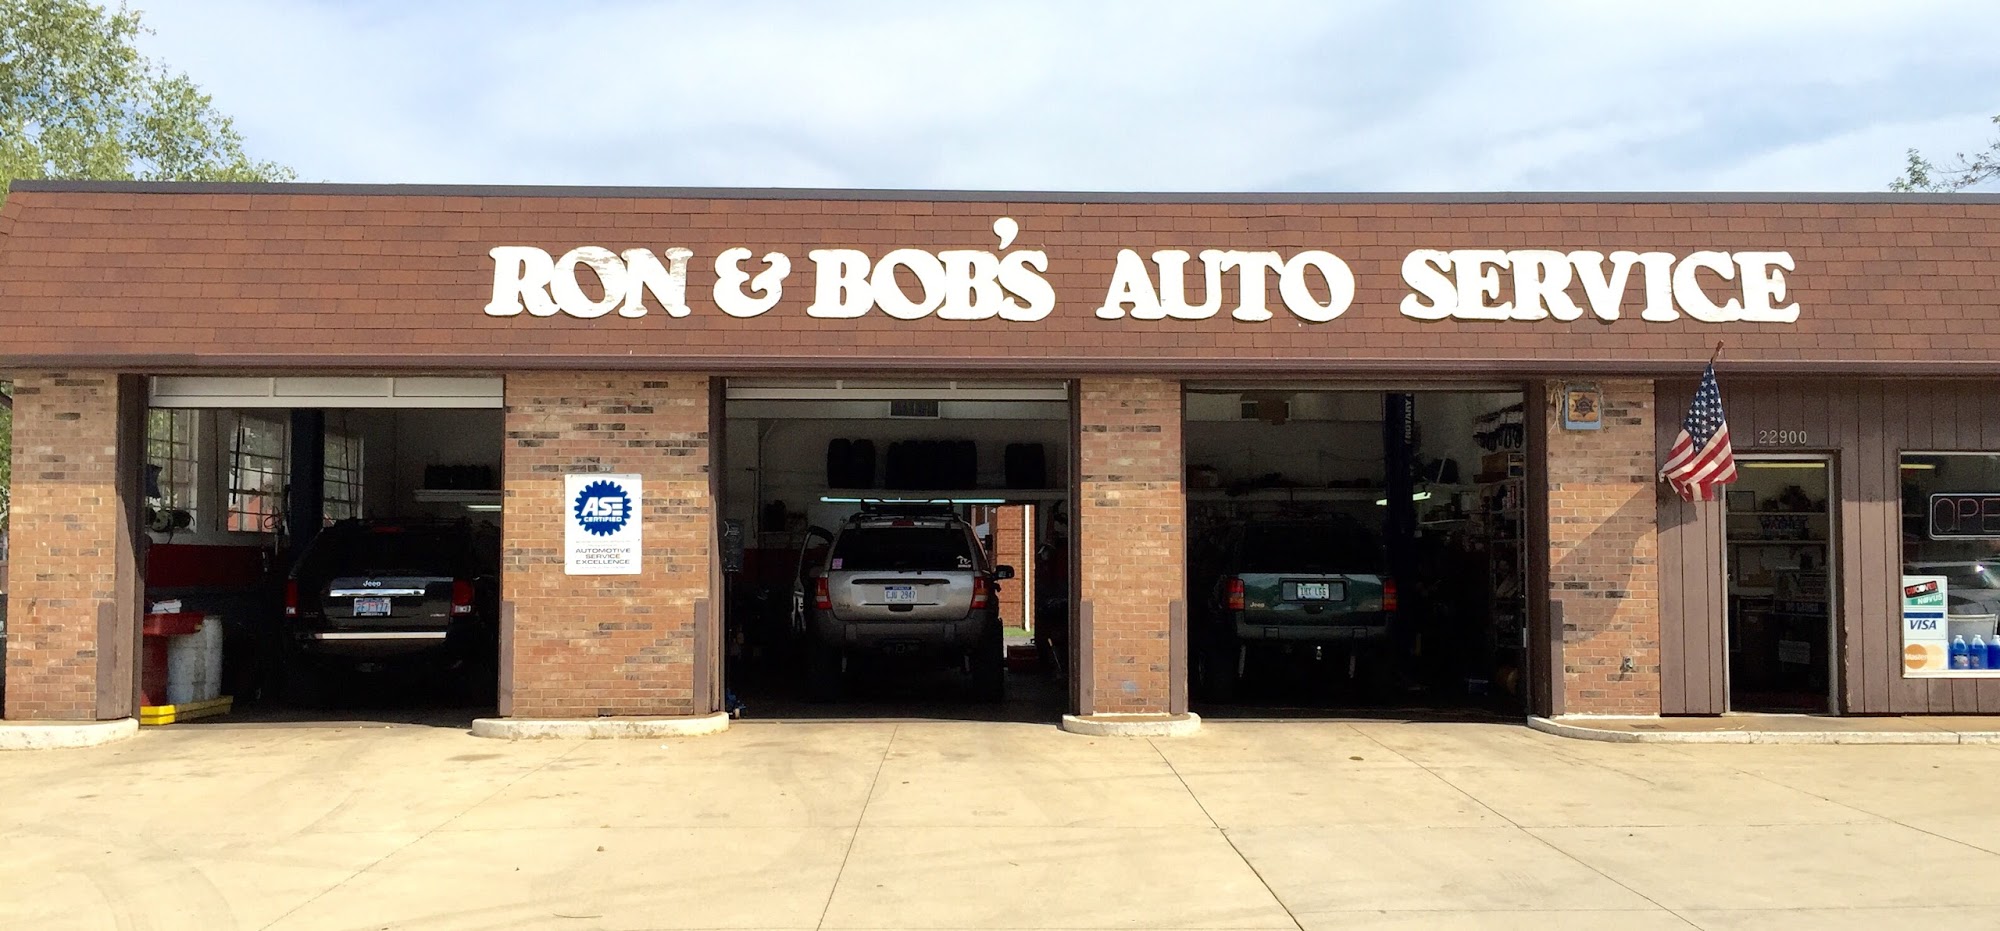 Ron & Bob's Auto Services